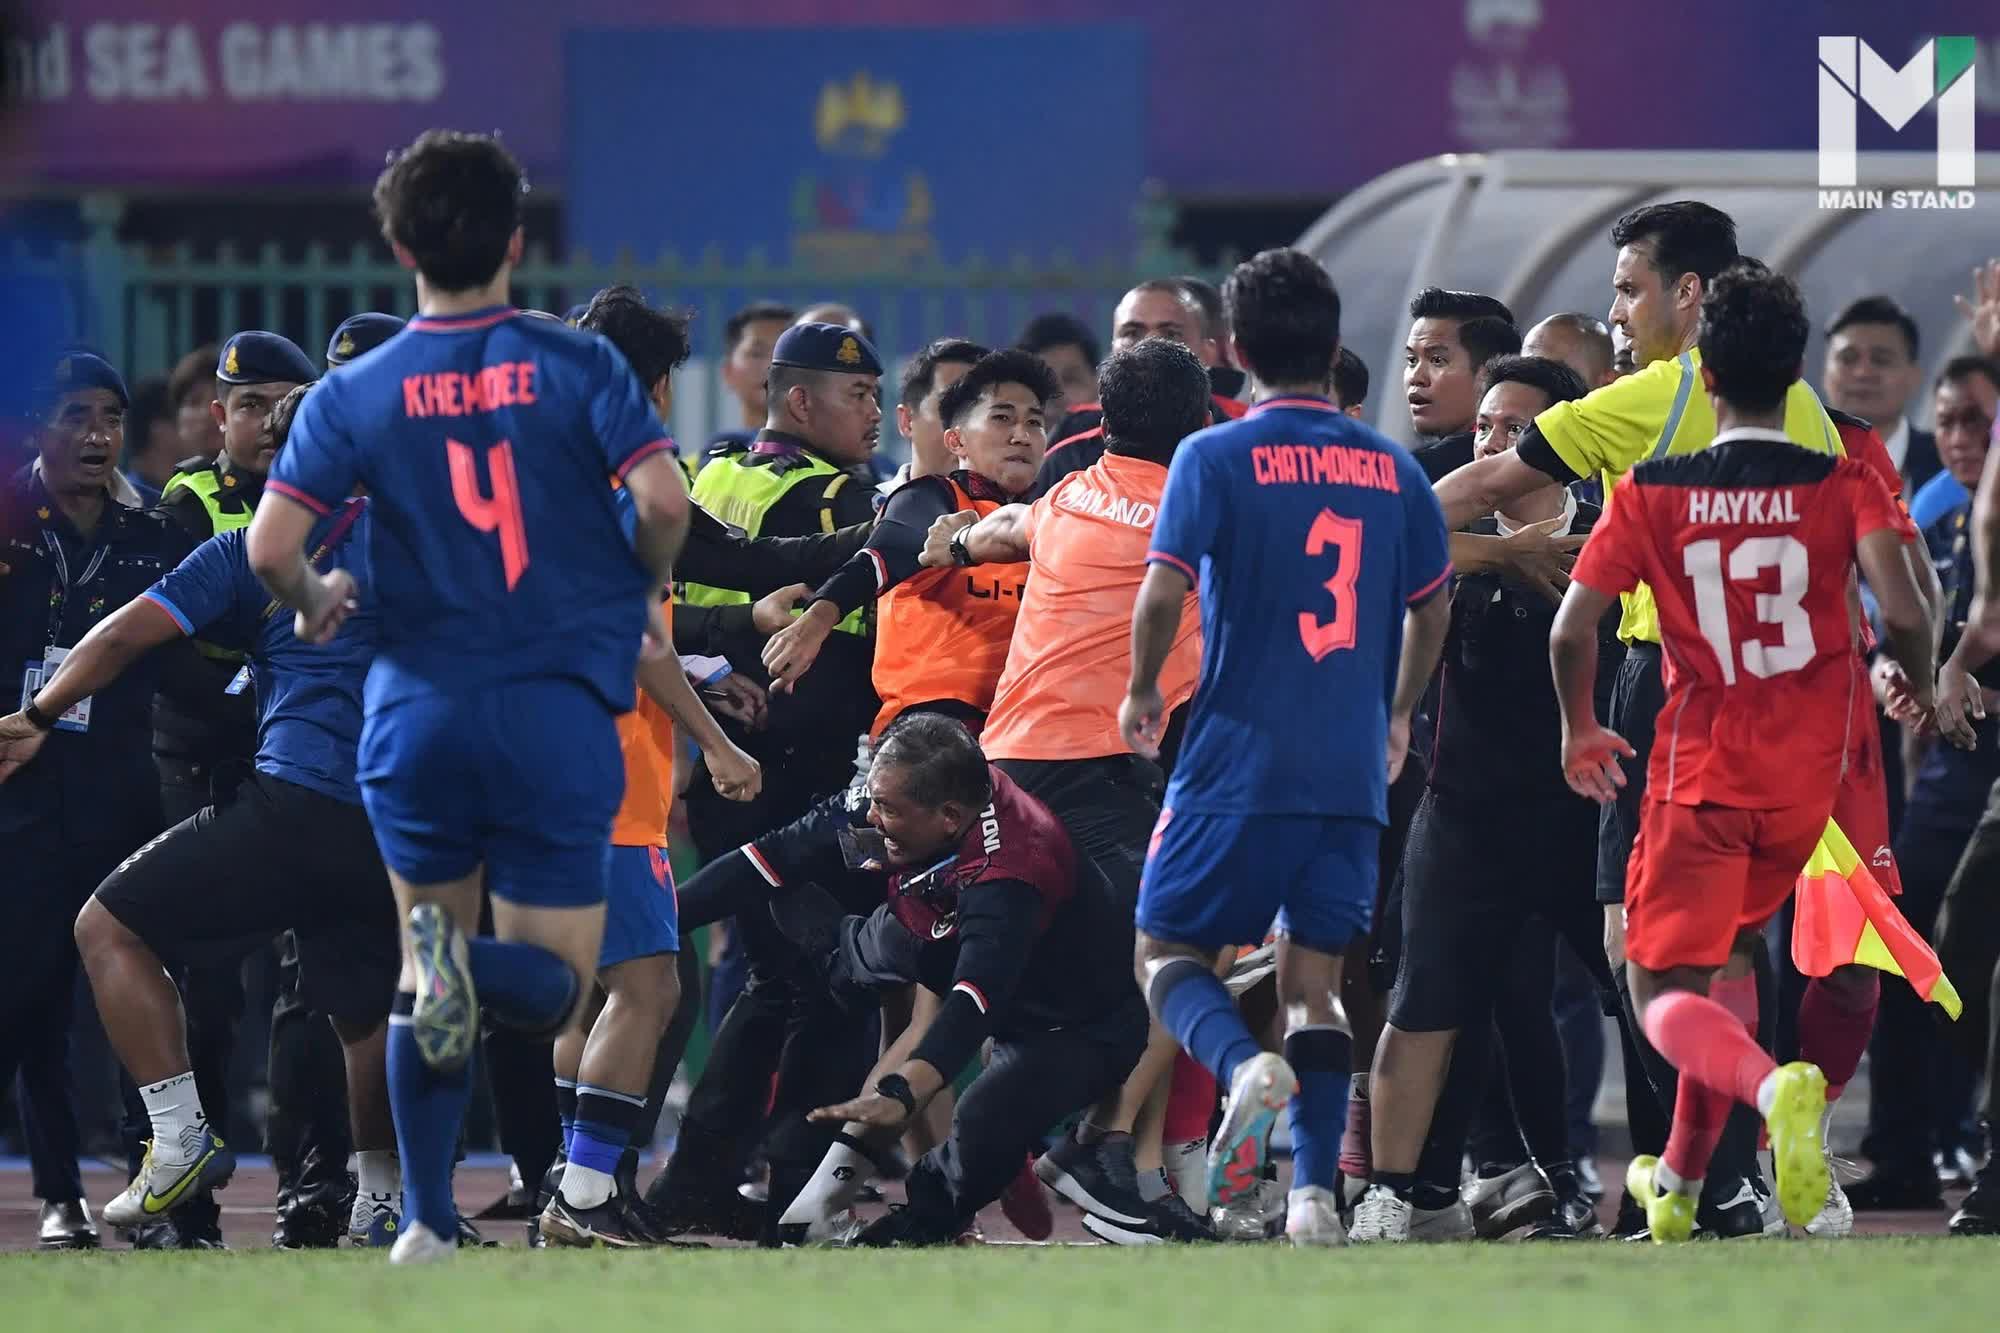 Fan Thái Lan yêu cầu cả đội U22 phải xin lỗi vì đánh nhau, làm xấu hình ảnh bóng đá nước nhà - Ảnh 2.